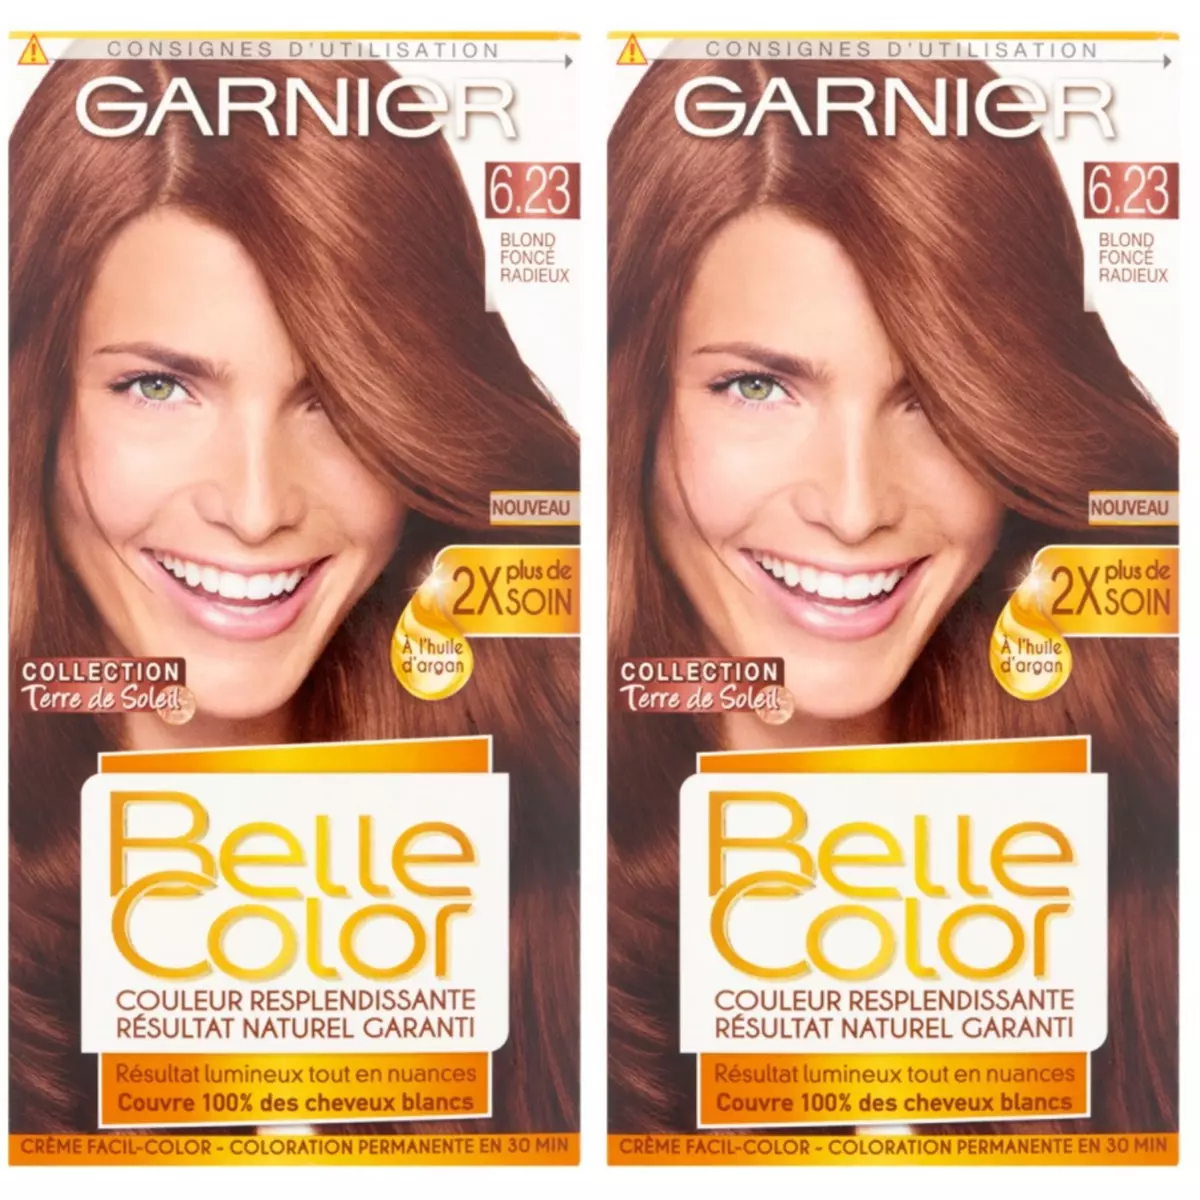 GARNIER Lot de 2 BELLE COLOR Coloration Permanente Résultat Naturel - Couleur Resplendissante 6.23 Blond Halé